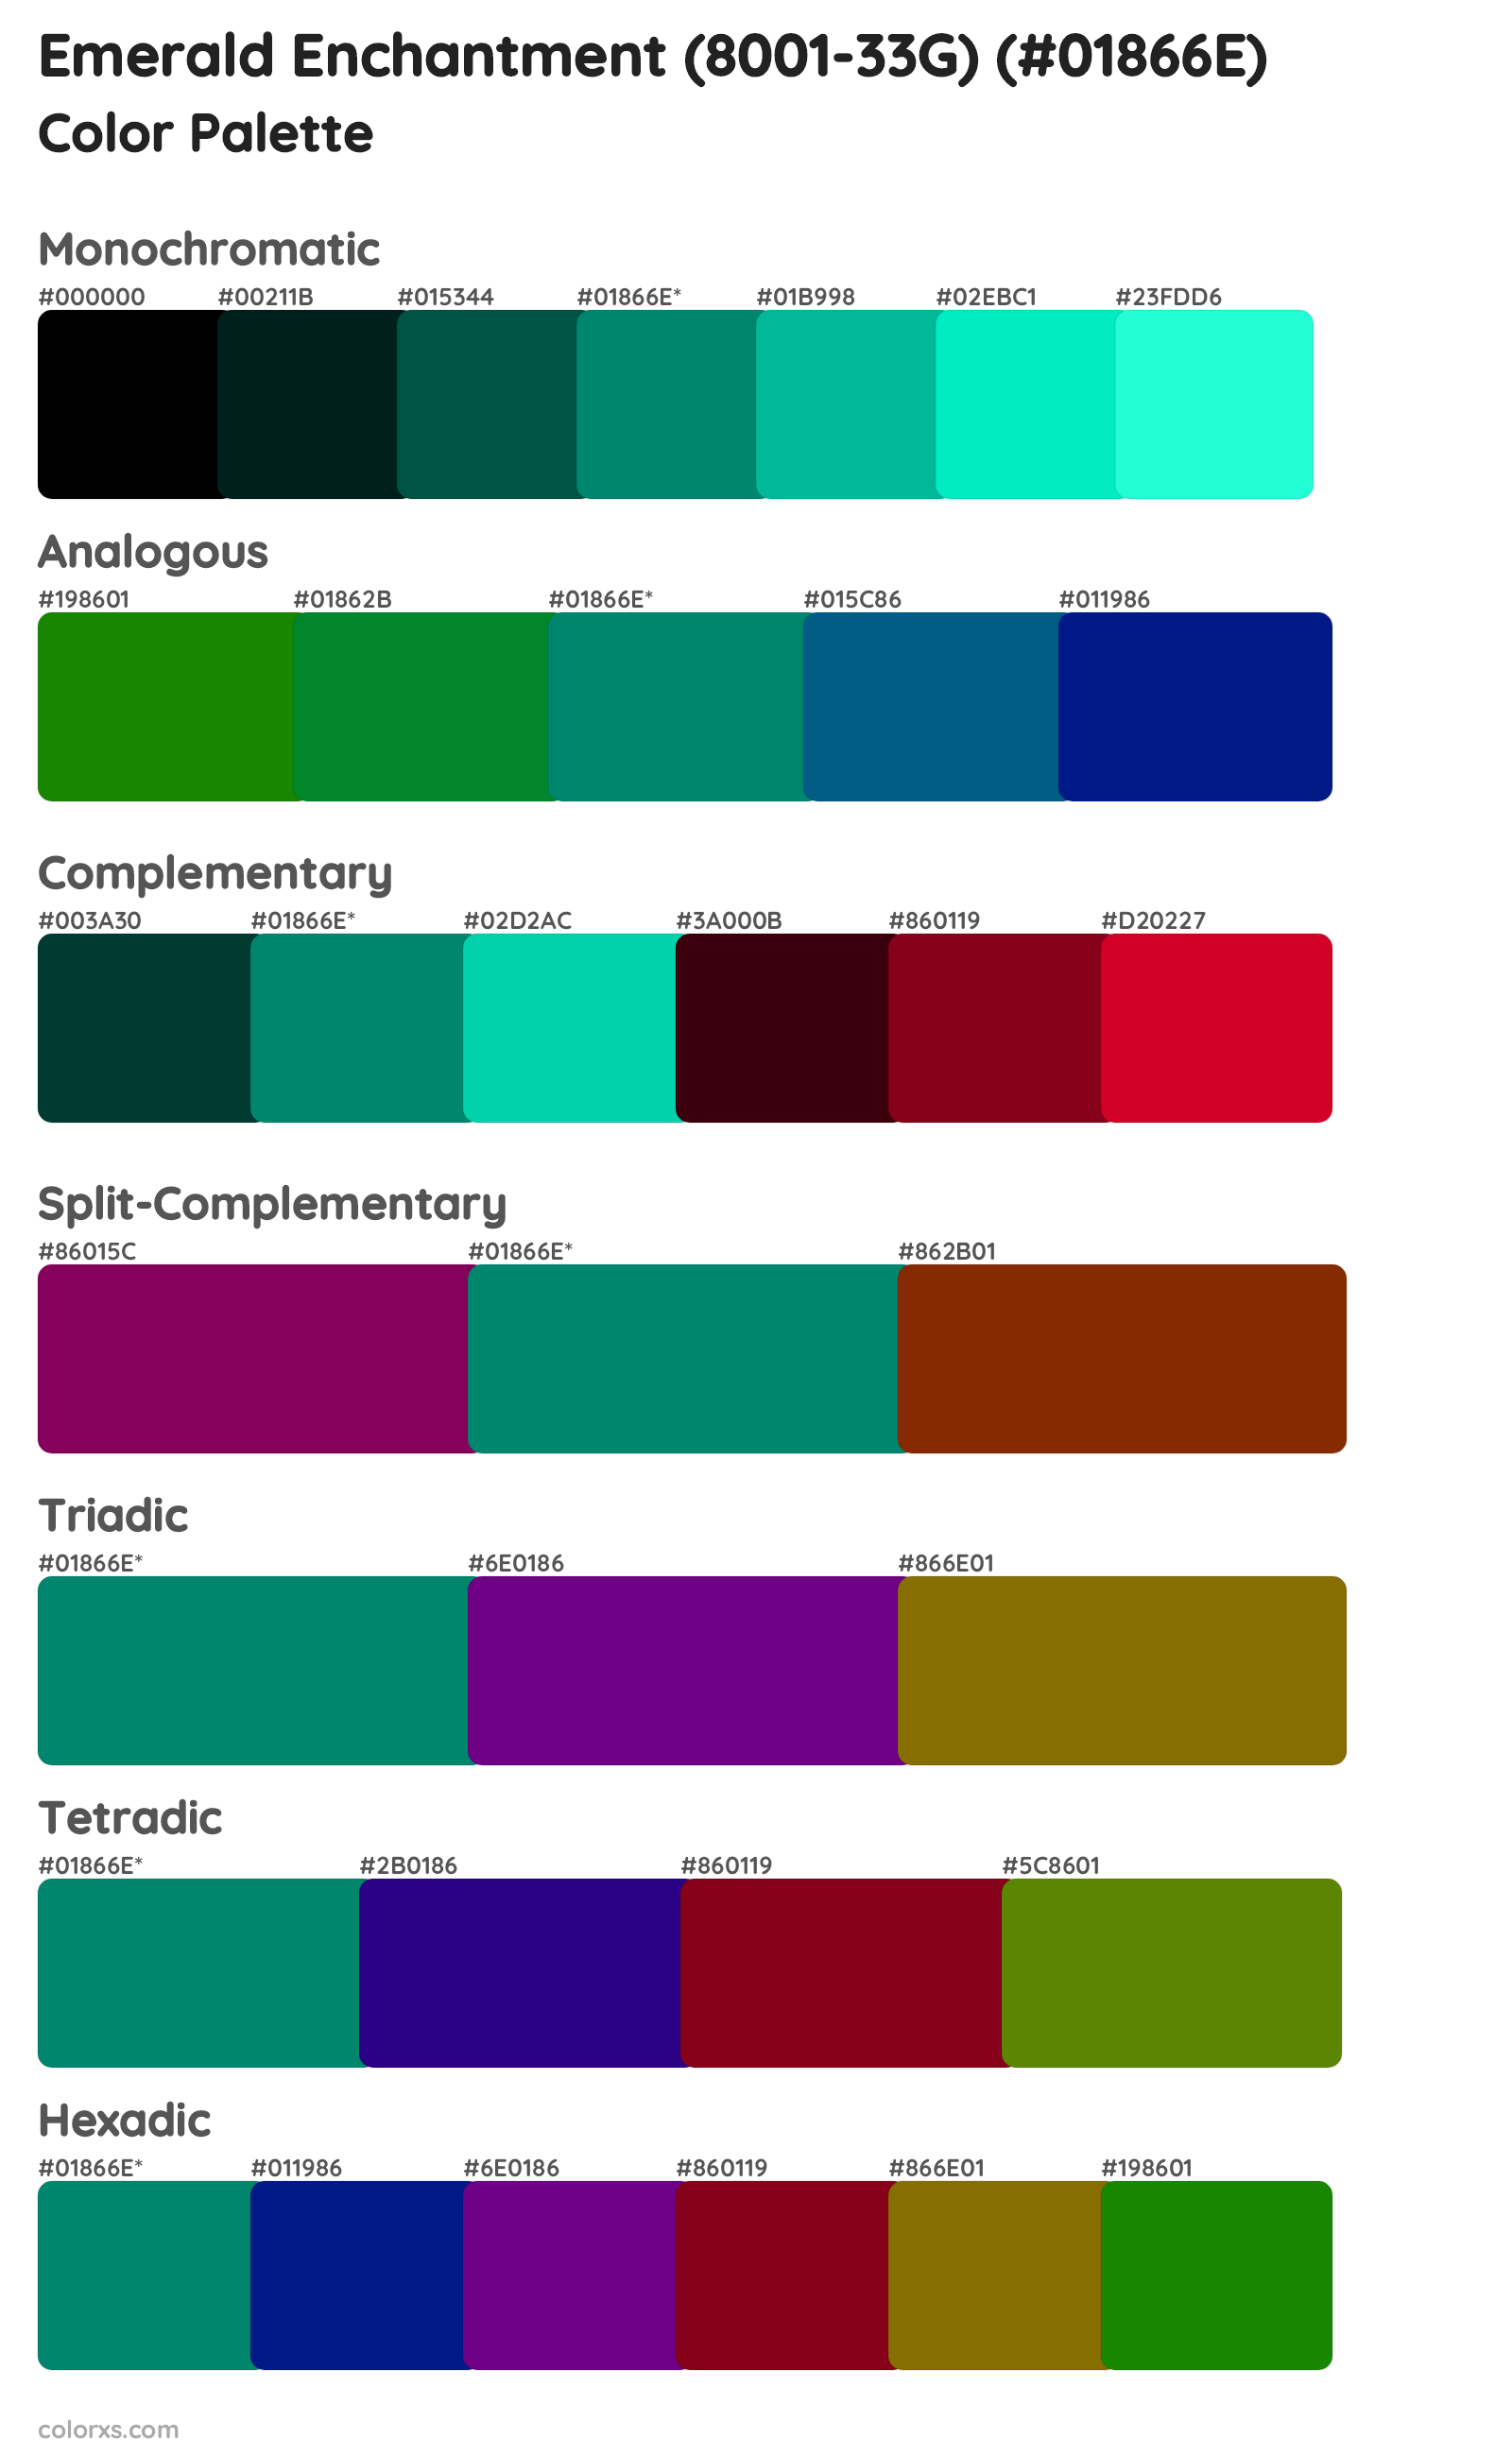 Emerald Enchantment (8001-33G) Color Scheme Palettes